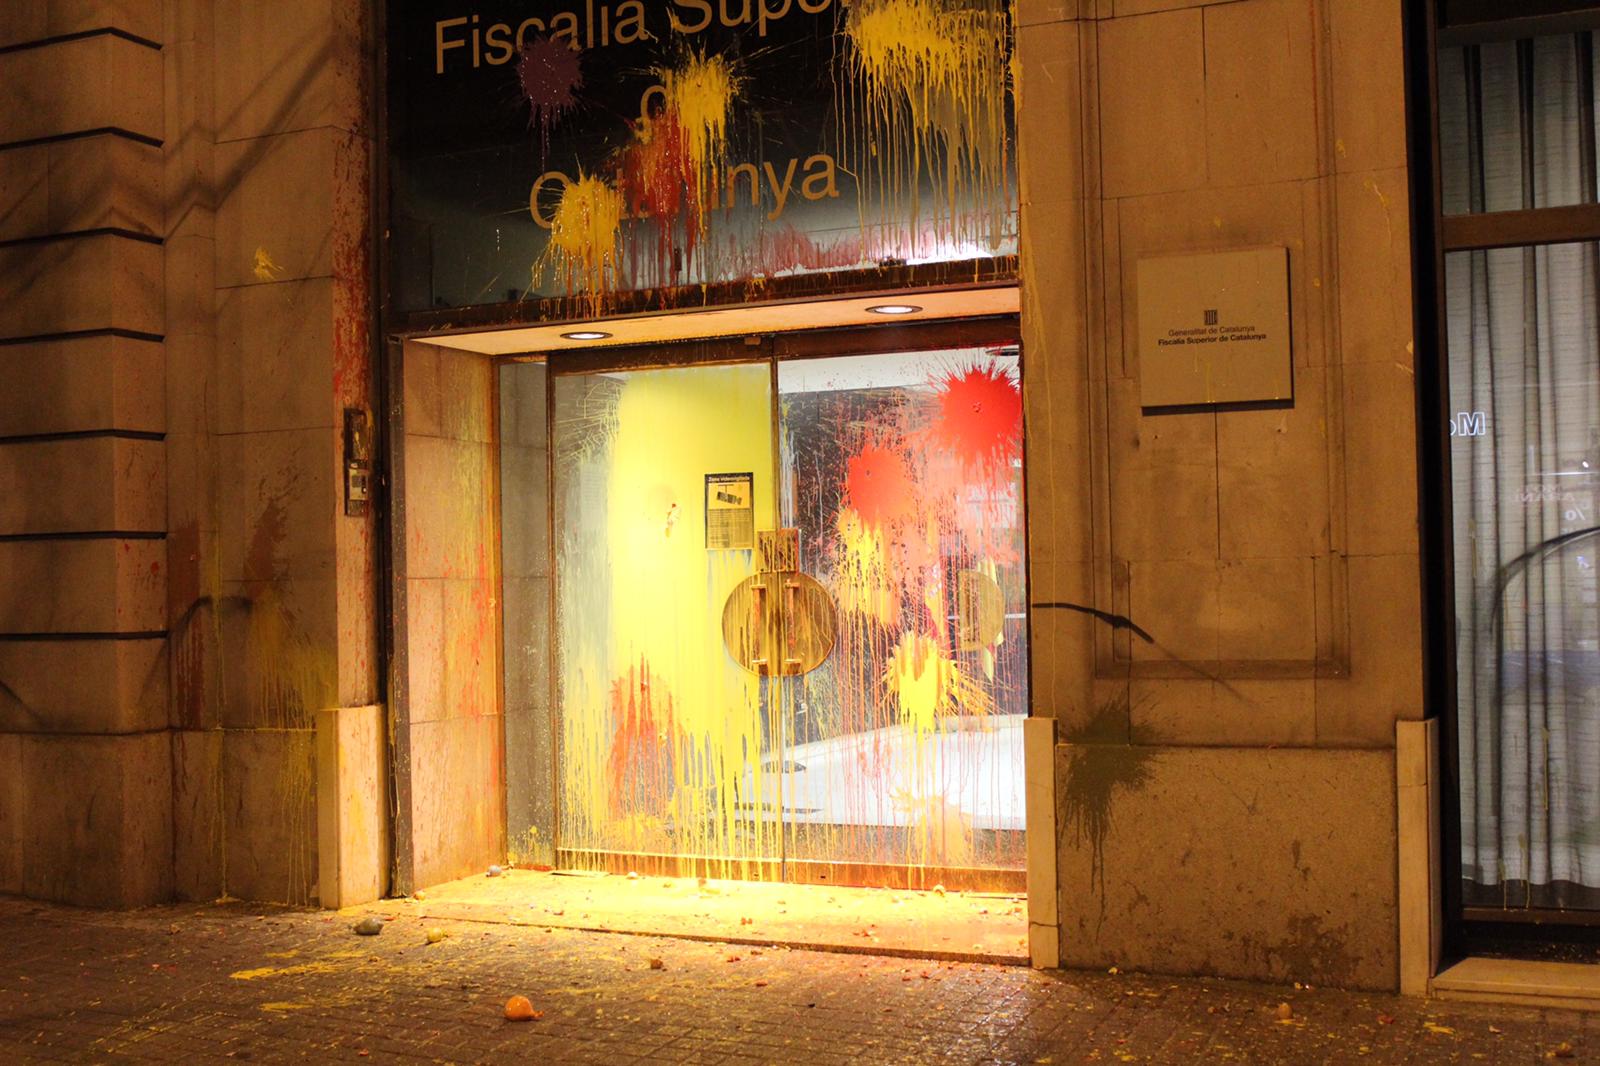 La Fiscalia General de l'Estat condemna "l'atac" a la seu de Barcelona